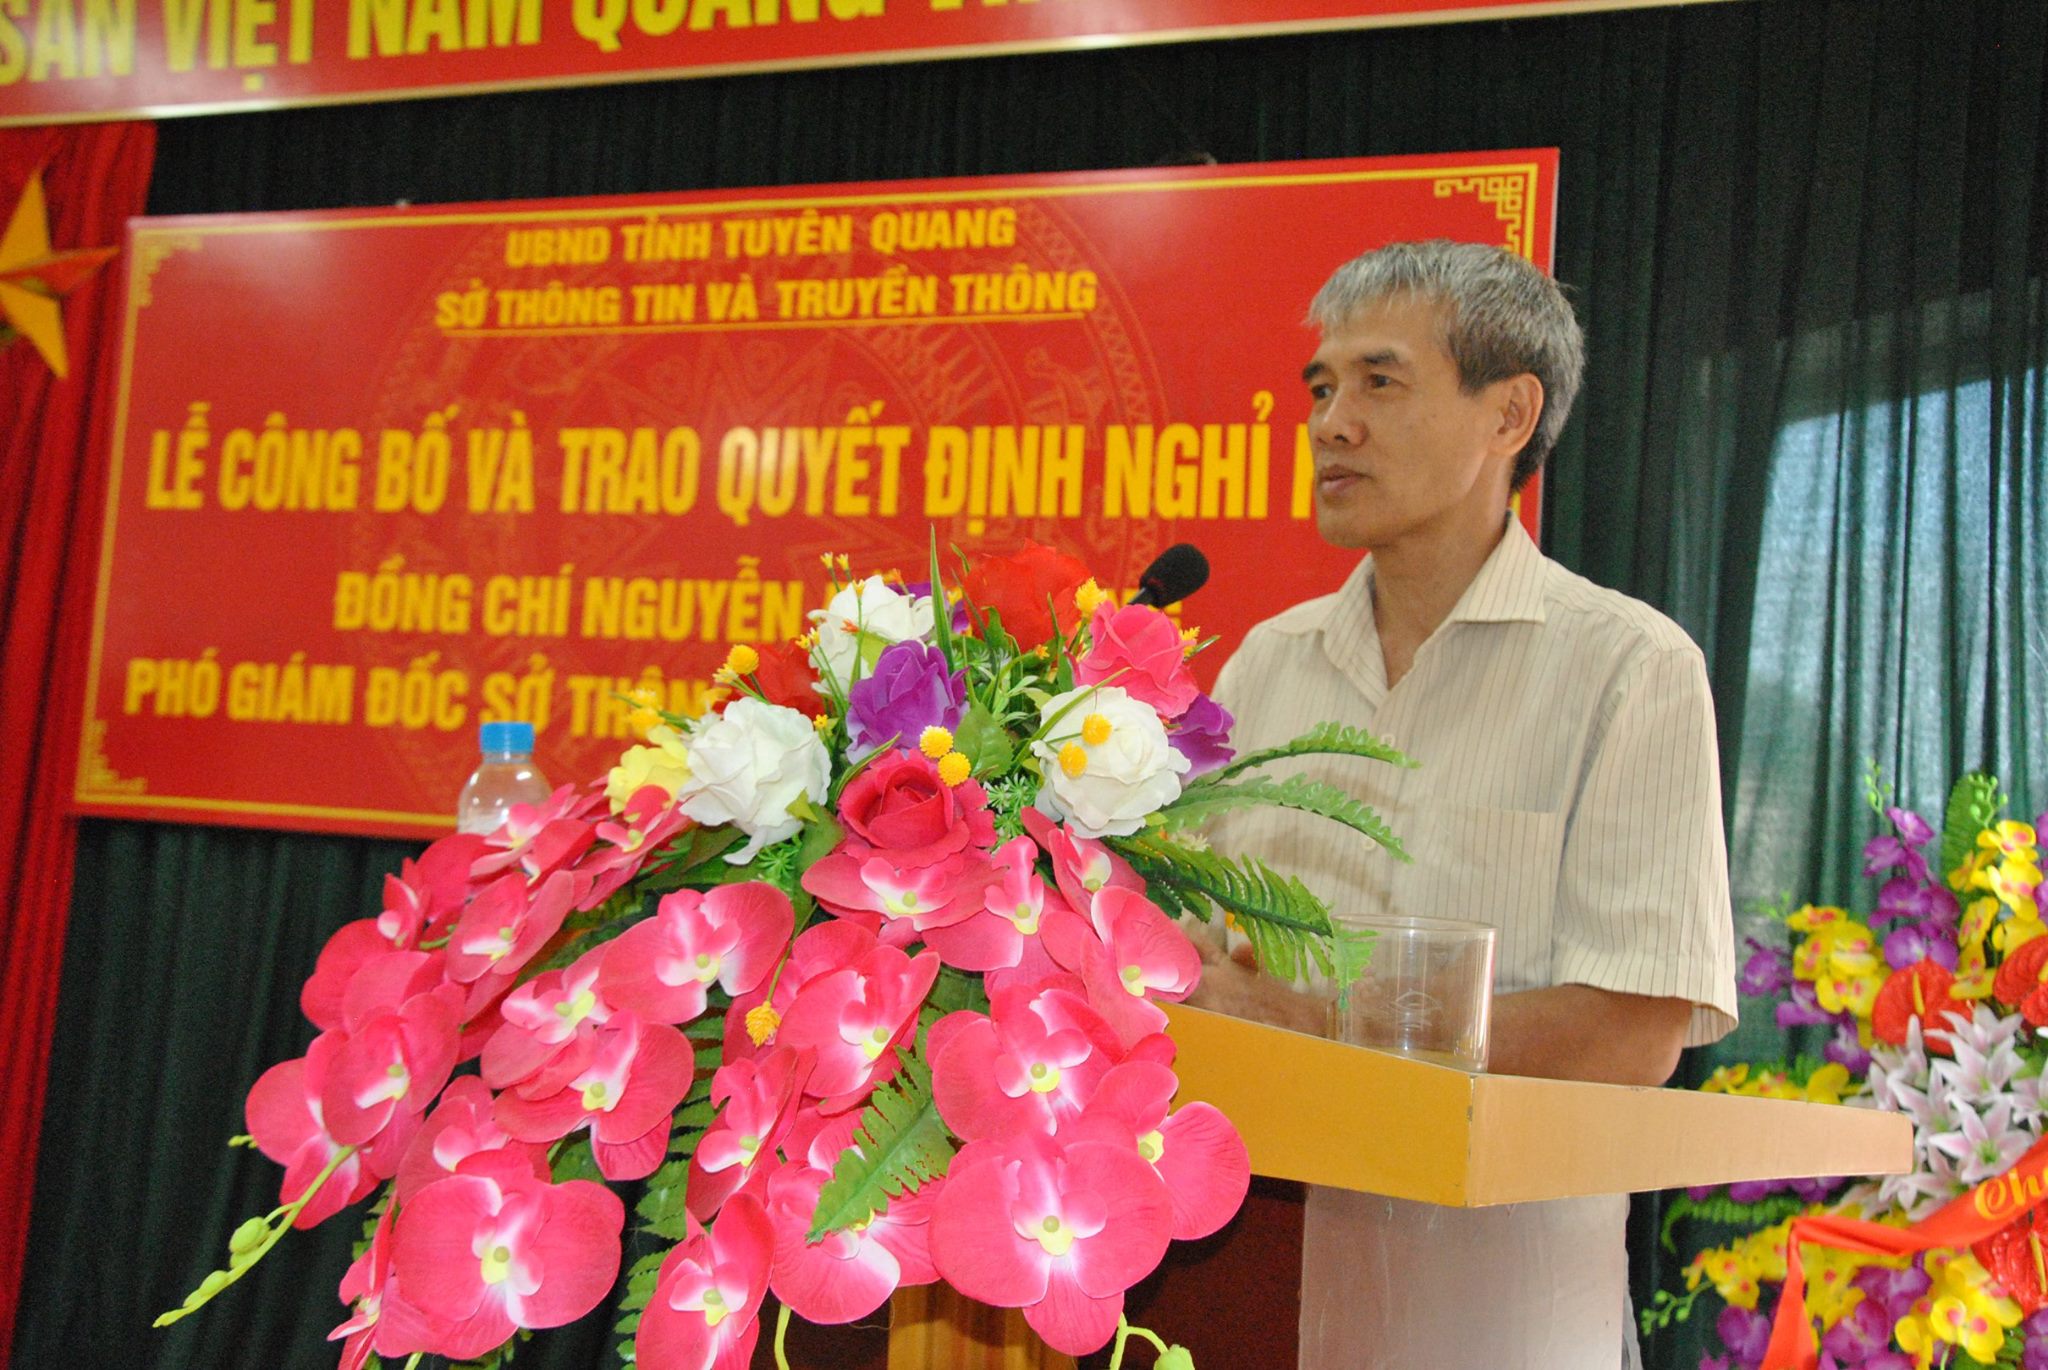 Đồng chí Nguyễn Đăng Dung phát biểu tại buổi lễ